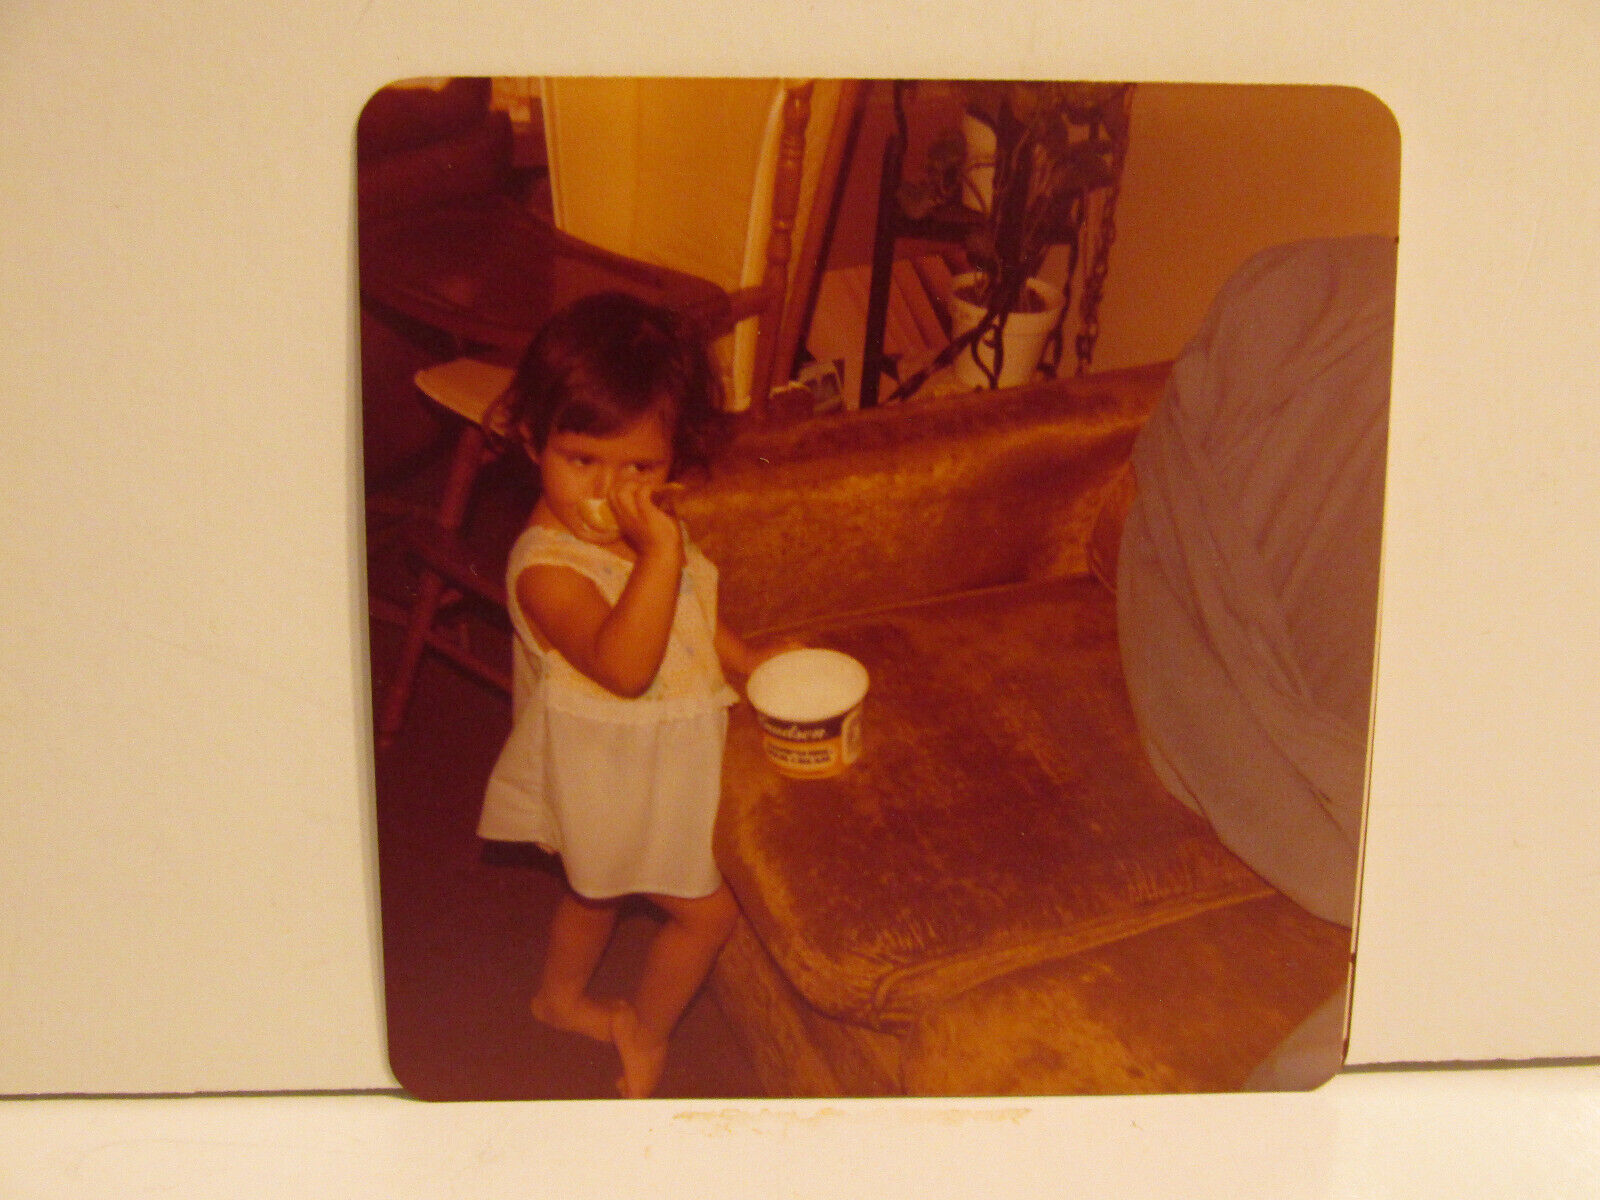 VINTAGE FOUND PHOTOGRAPH COLOR ART OLD PHOTO 1980 BRUNETTE TODDLER GIRL EATING